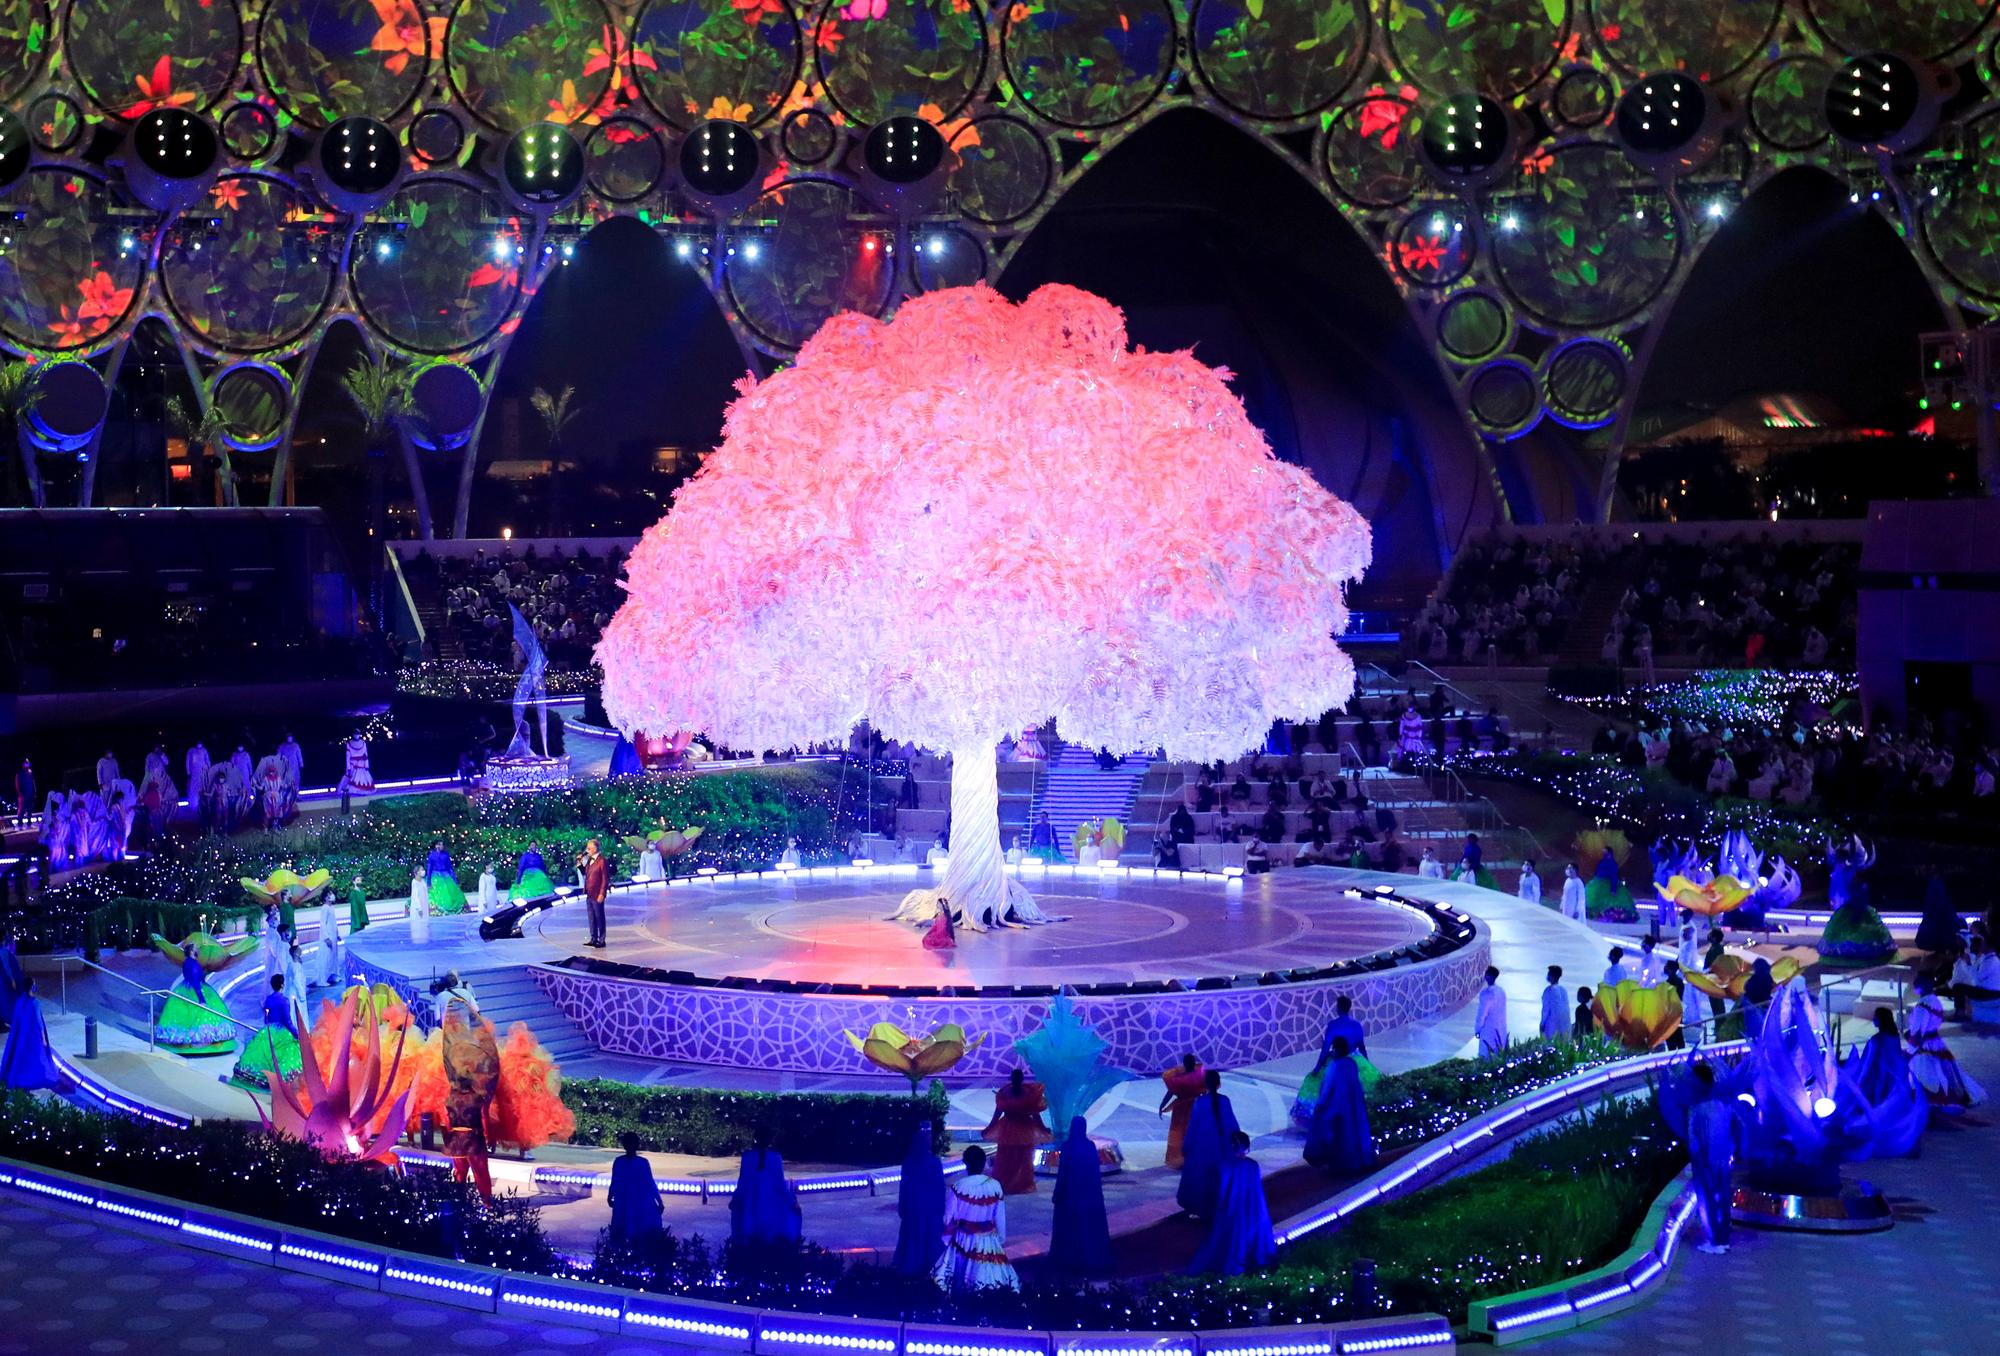 La cérémonie d'ouverture de l'Exposition universelle de Dubaï [Reuters - Rula Rouhana]